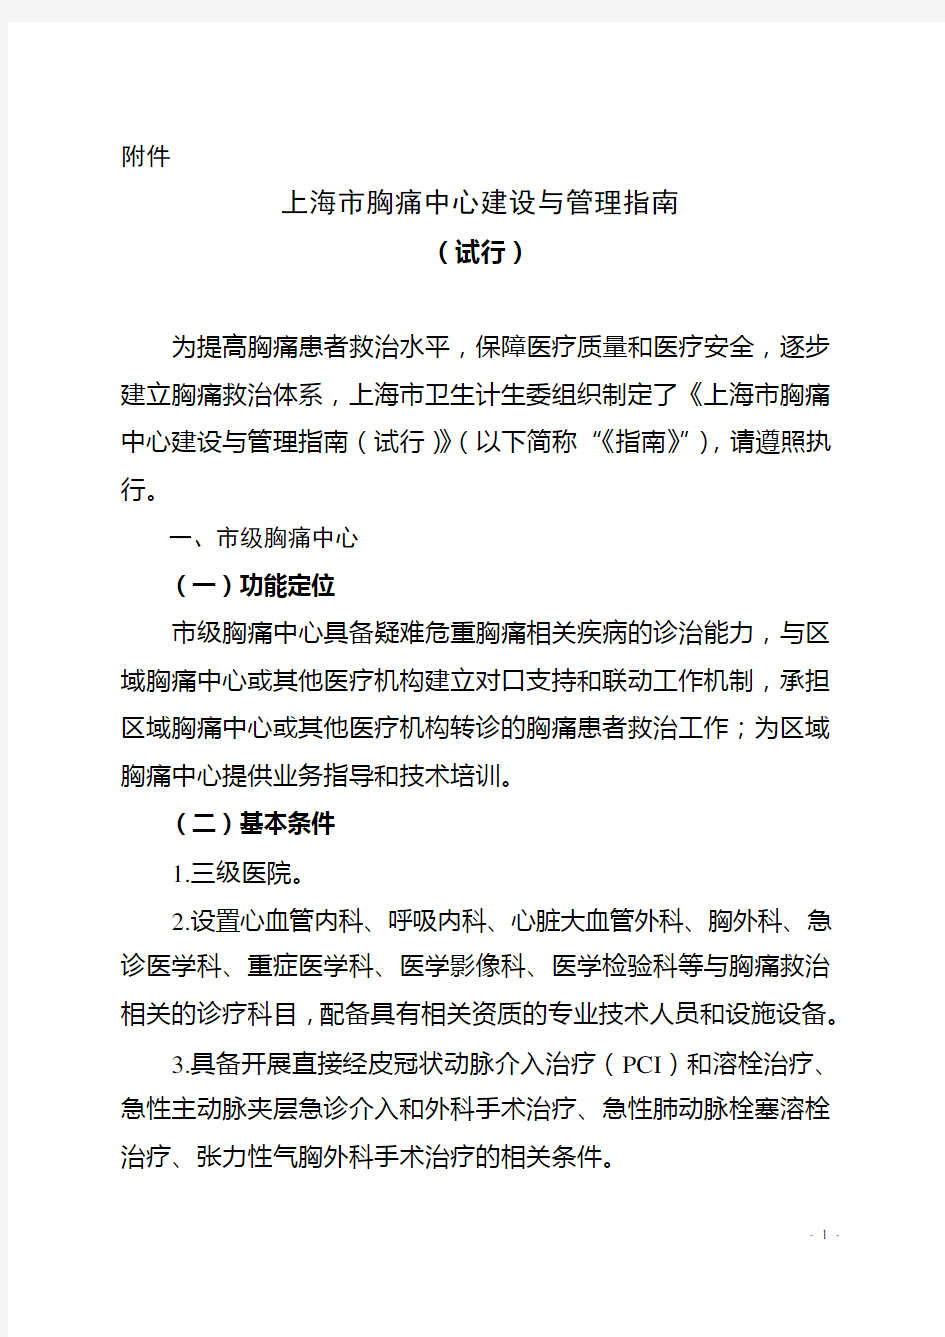 上海卫生和计划生育委员会文件